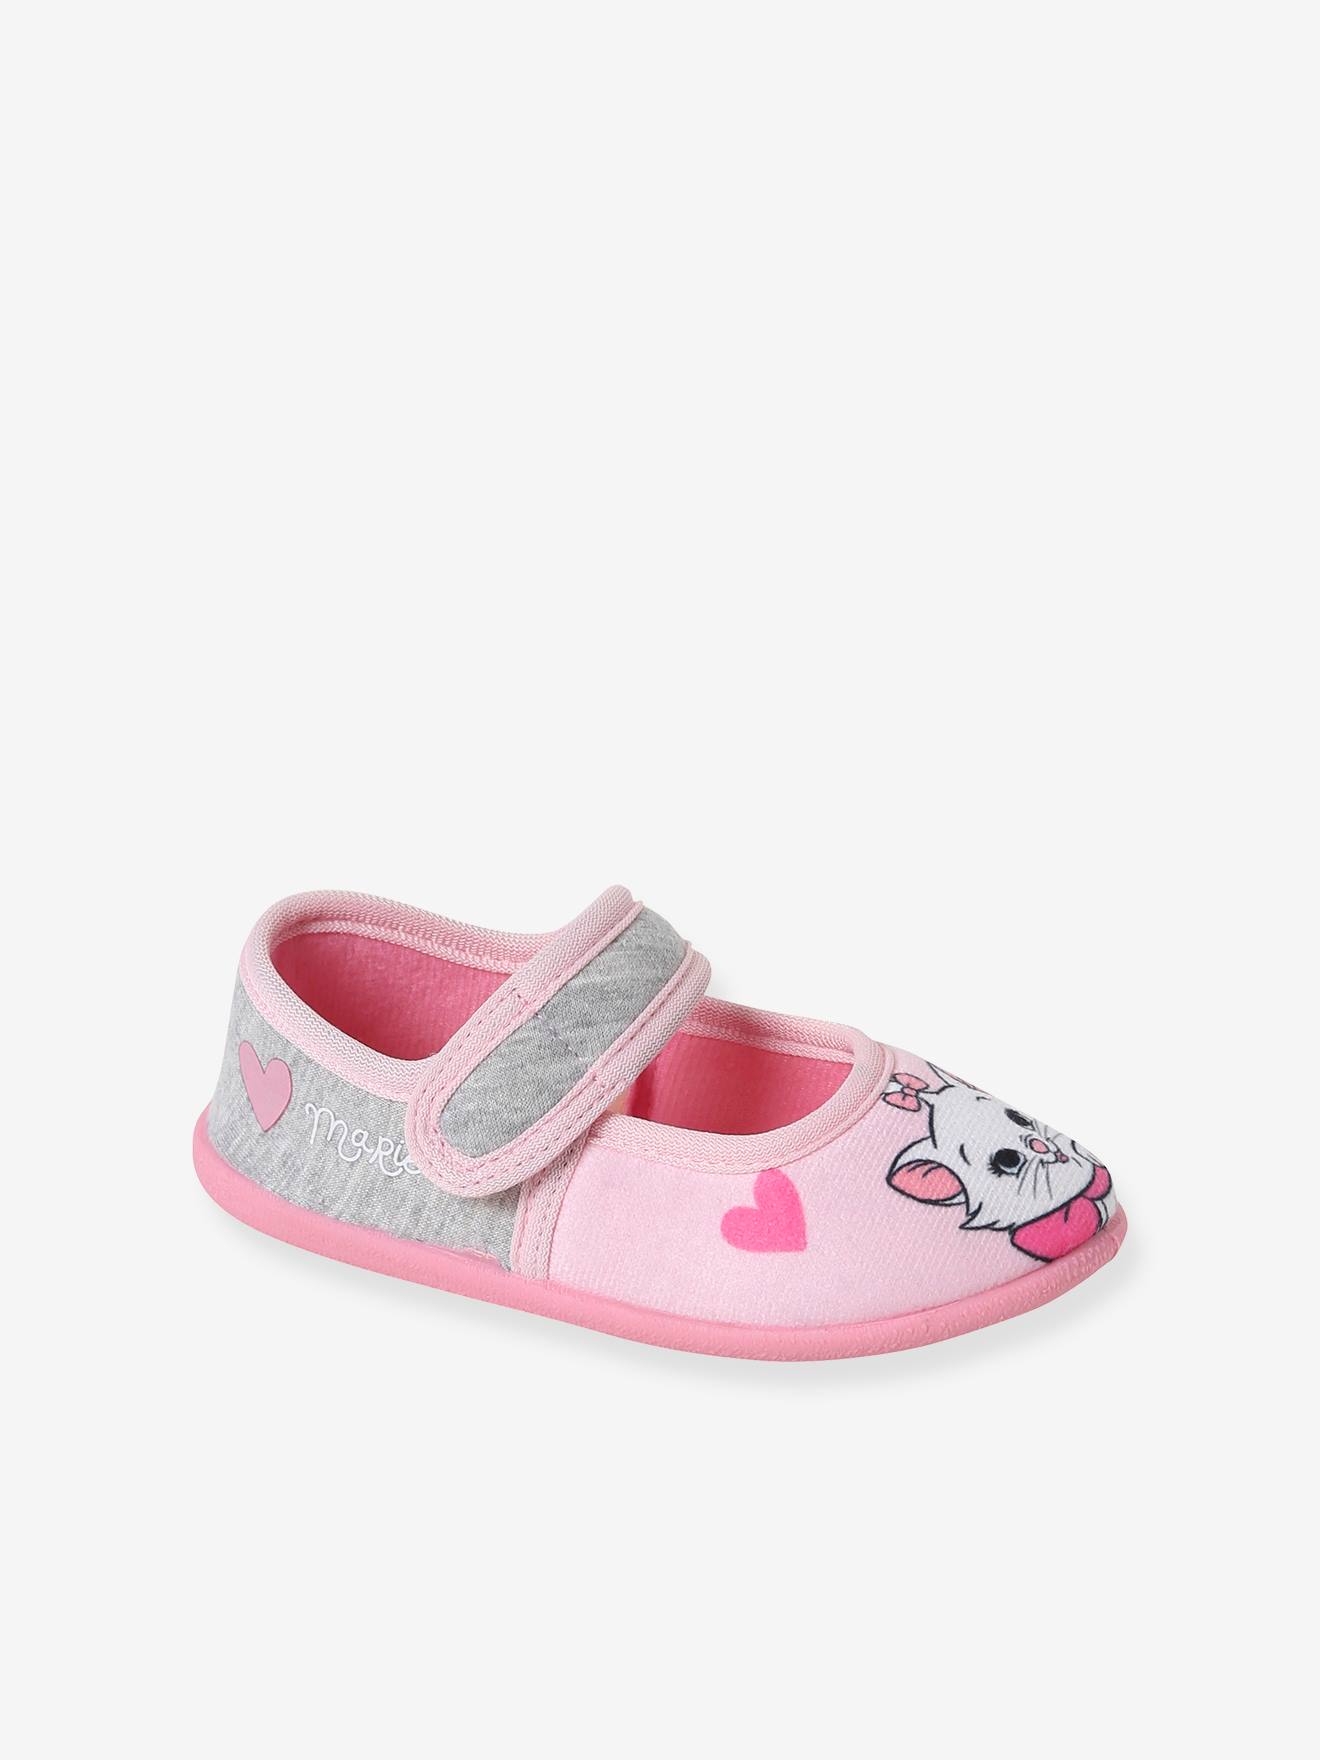 Meisjespantoffels Disney® Marie de Aristokatten roze/grijs